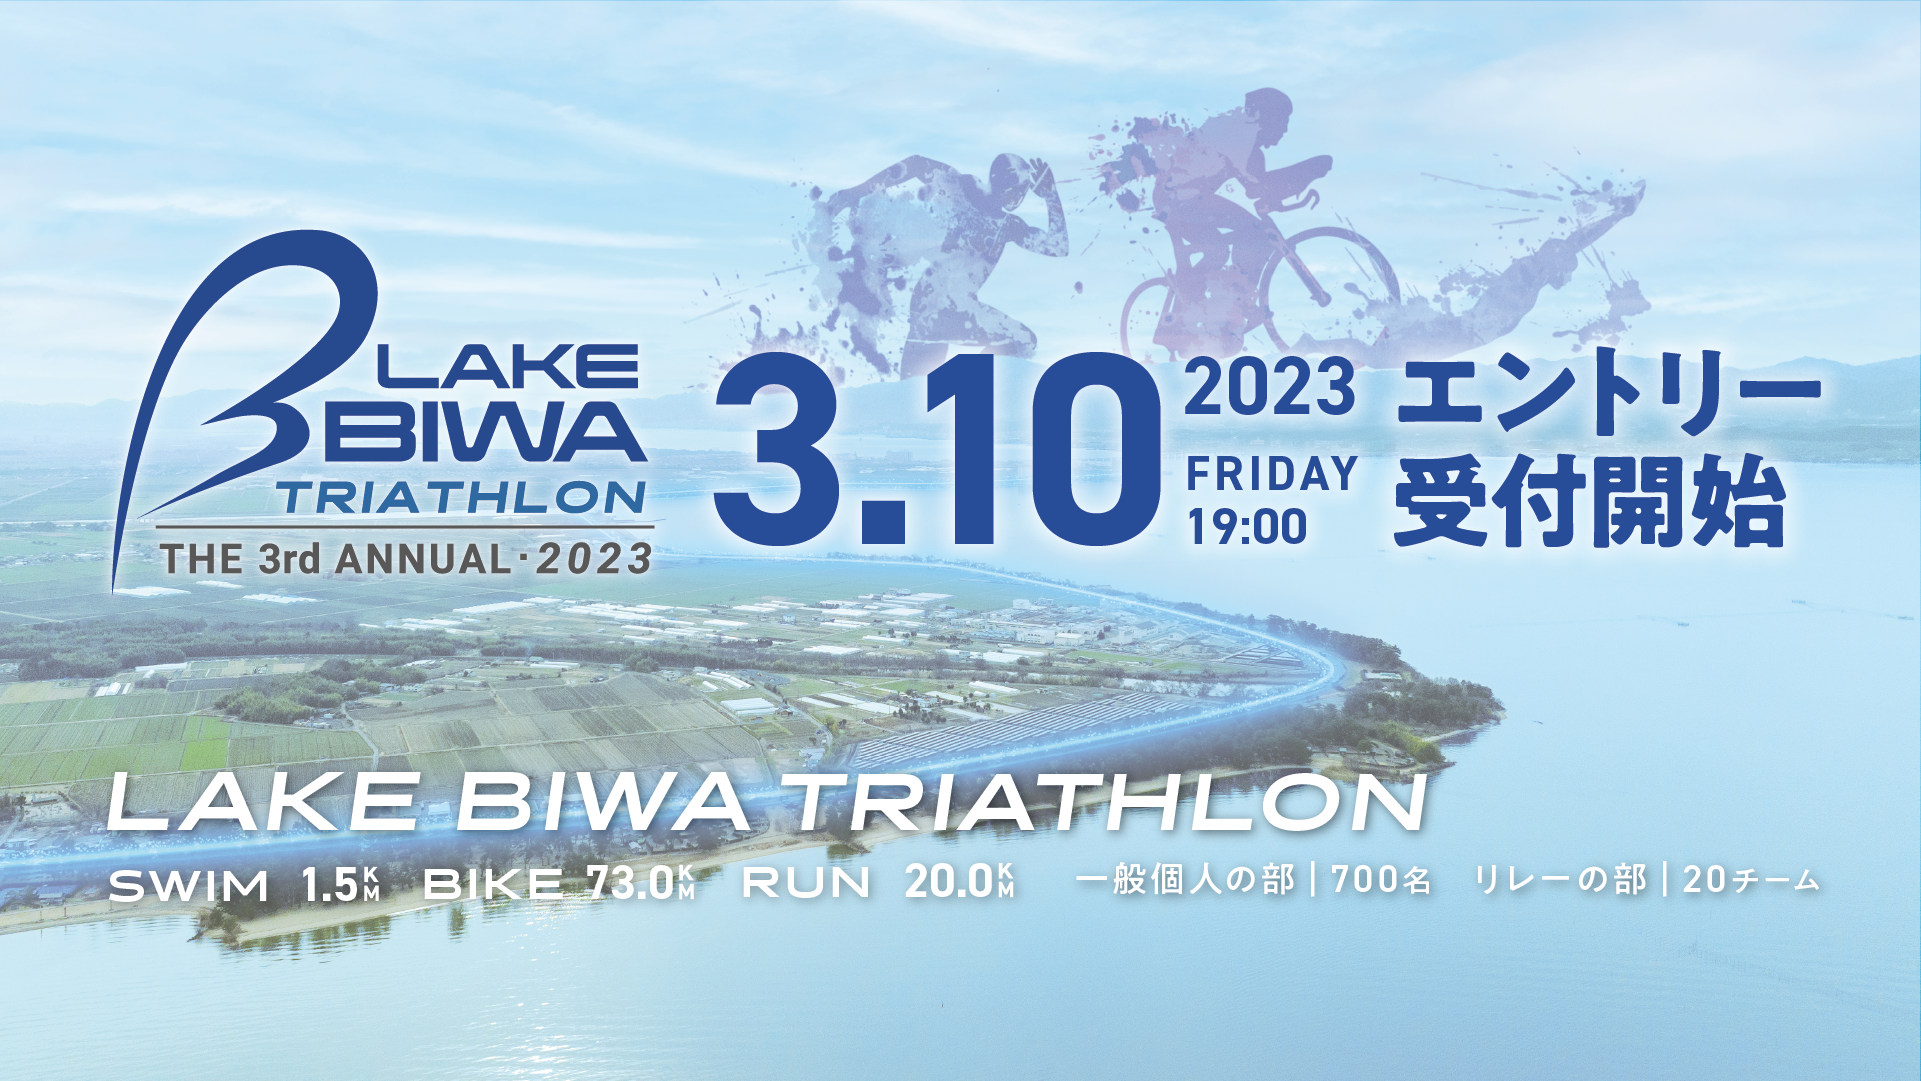 「The 3rd Annual LAKE BIWA TRIATHLON 2023」エントリー開始のお知らせ